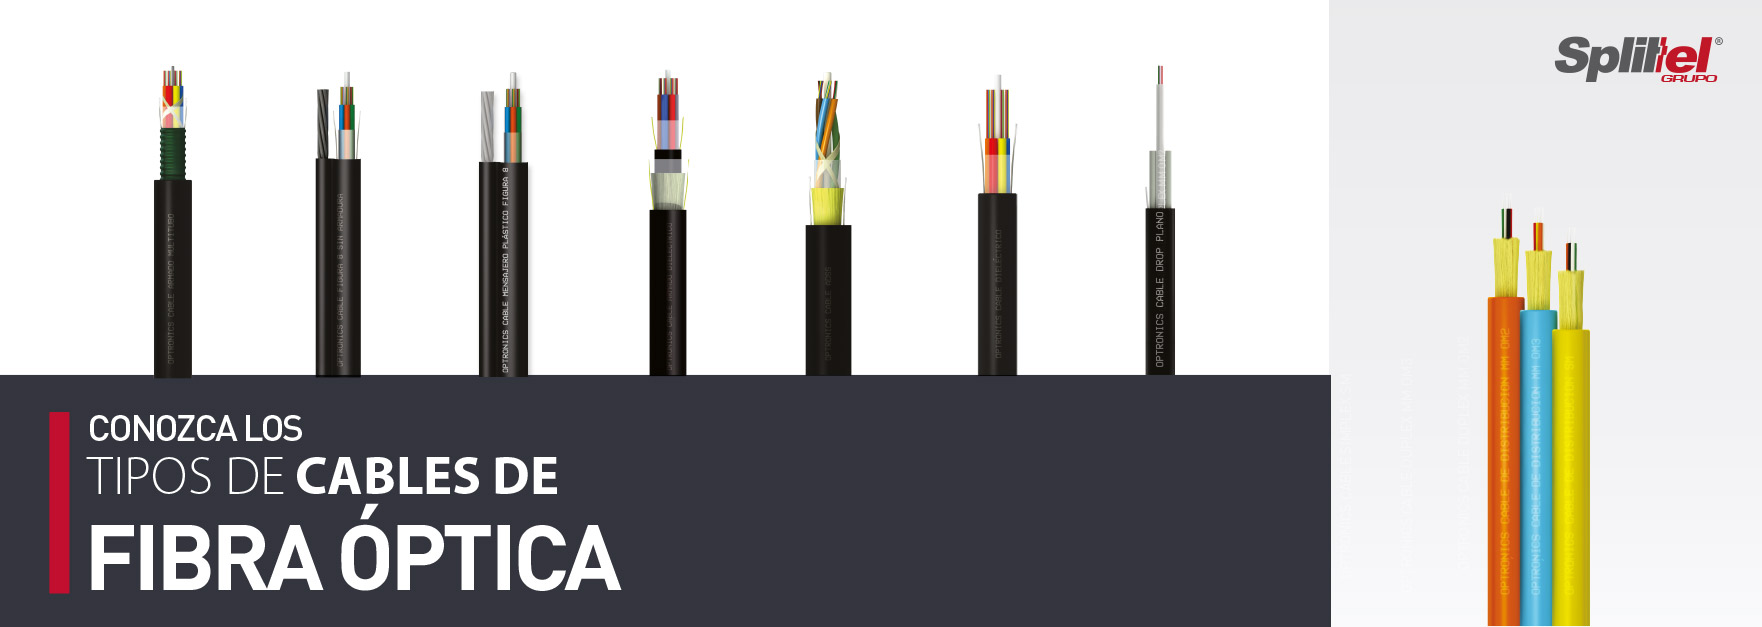 Conozca los tipos de cables de fibra óptica